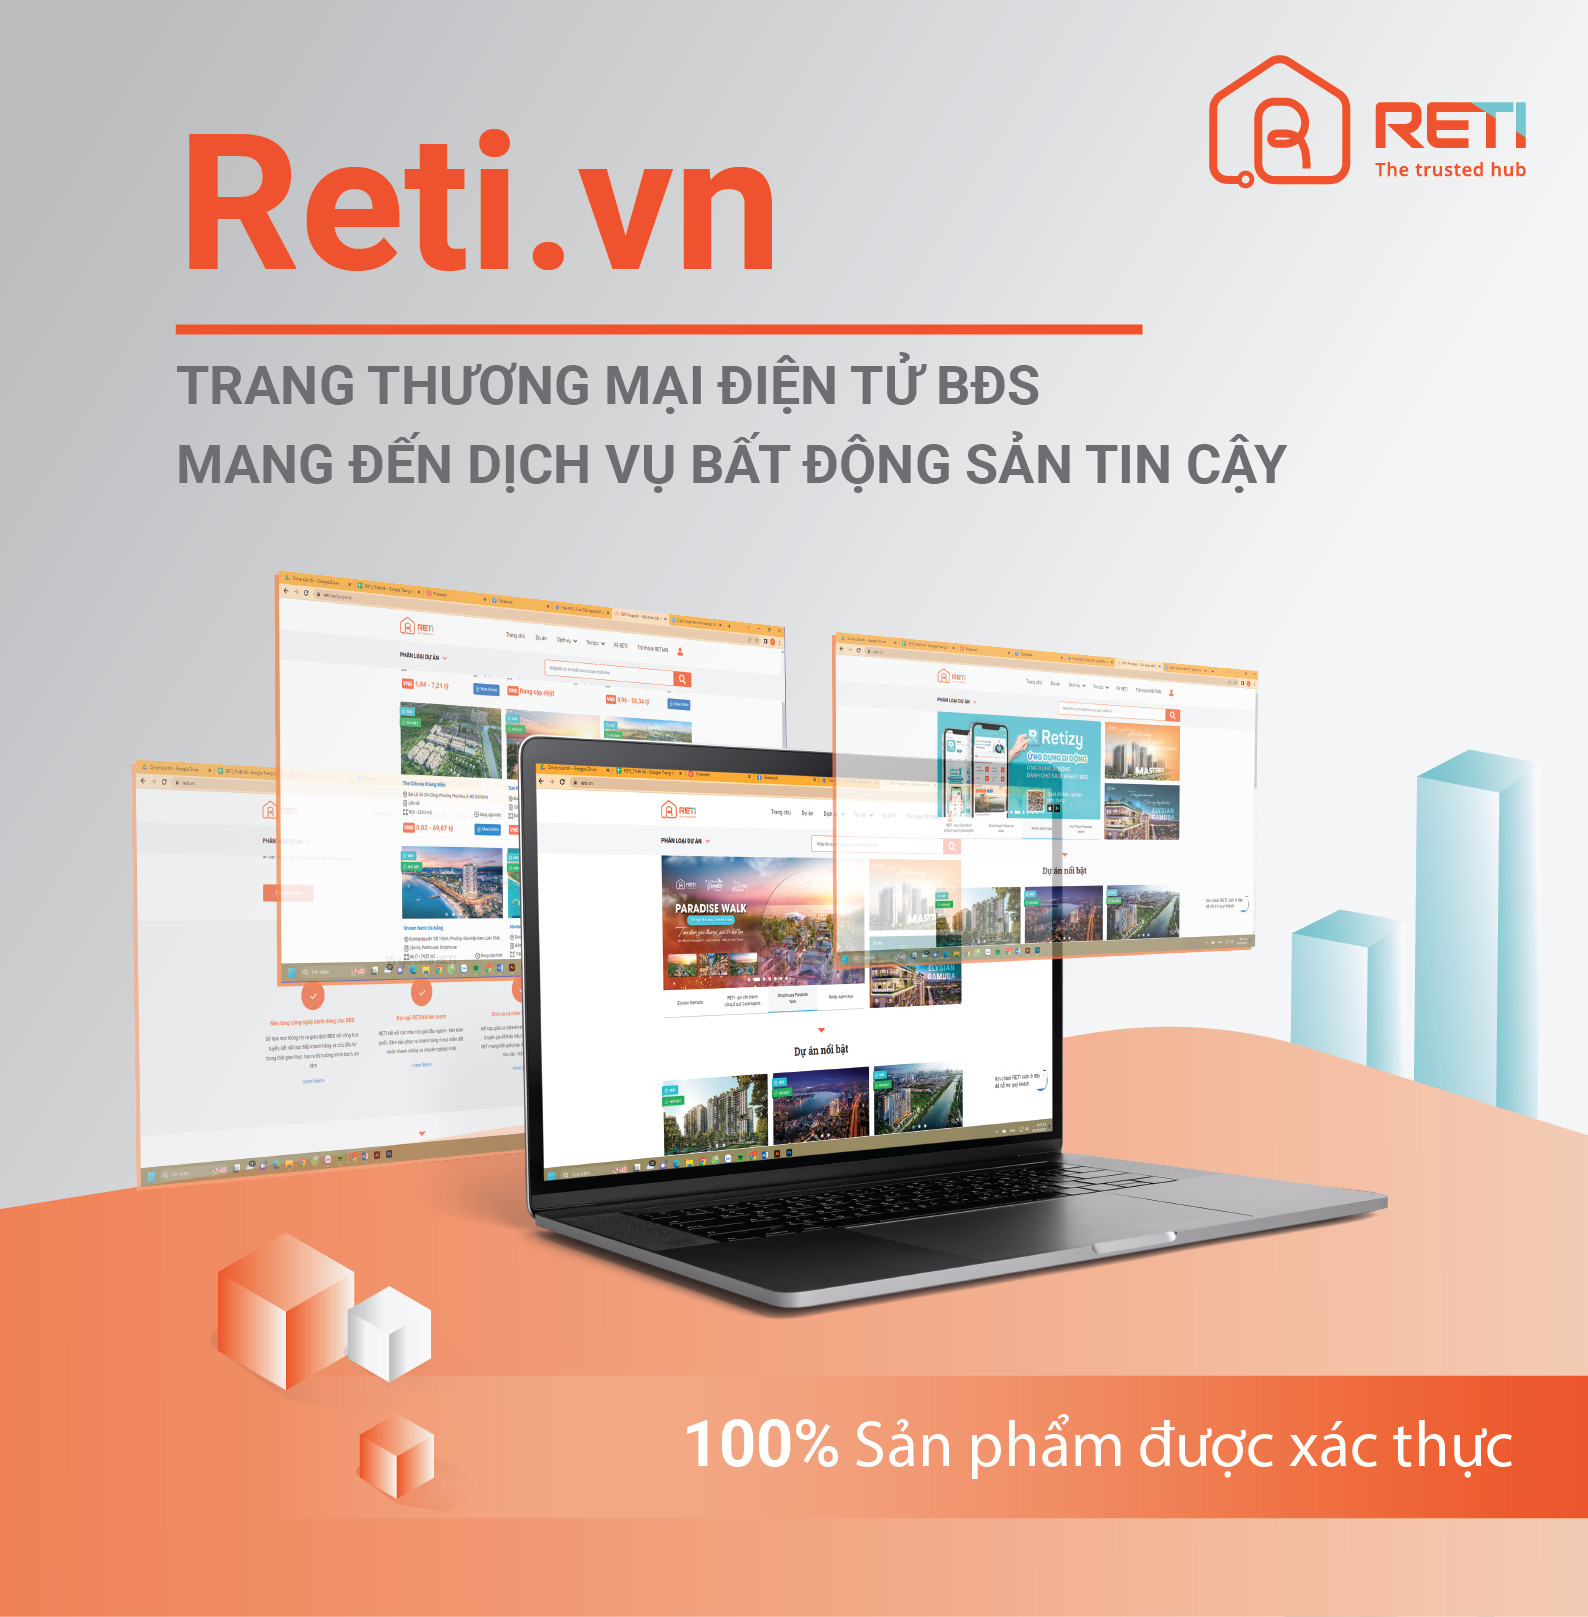 Reti.vn – Trang thương mại điện tử mang đến dịch vụ BĐS tin cậy, 100% sản phẩm được xác thực 2